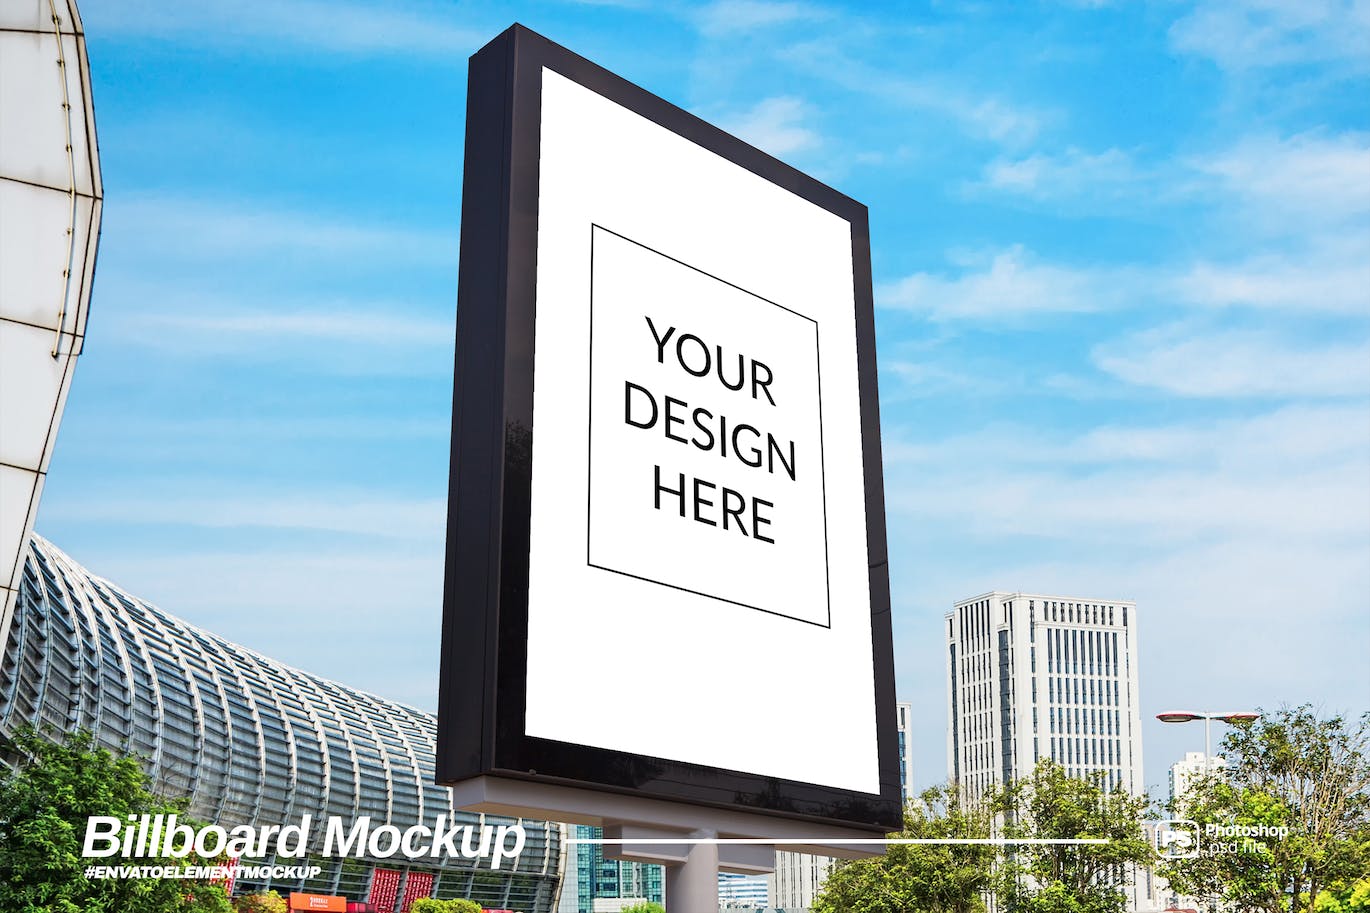 侧视图垂直广告牌设计样机模板 Side View Vertical Billboard Mockup 样机素材 第1张